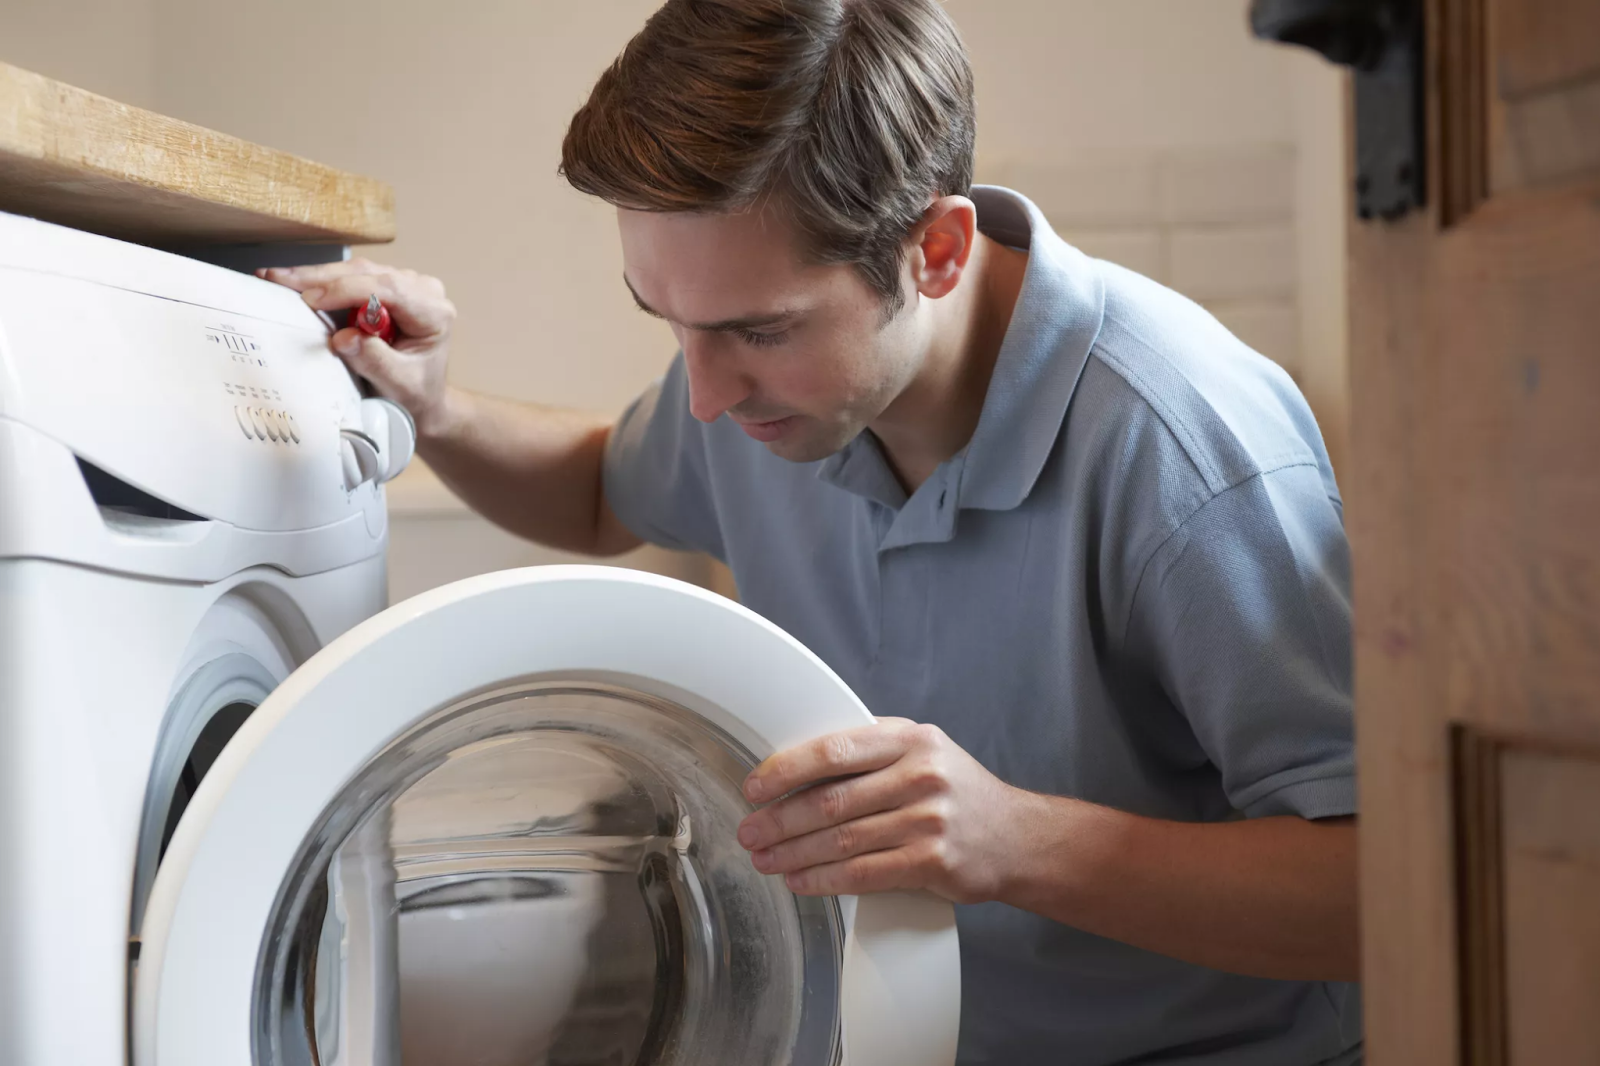 Vệ sinh máy bơm nhằm máy giặt sinh hoạt chất lượng tốt 